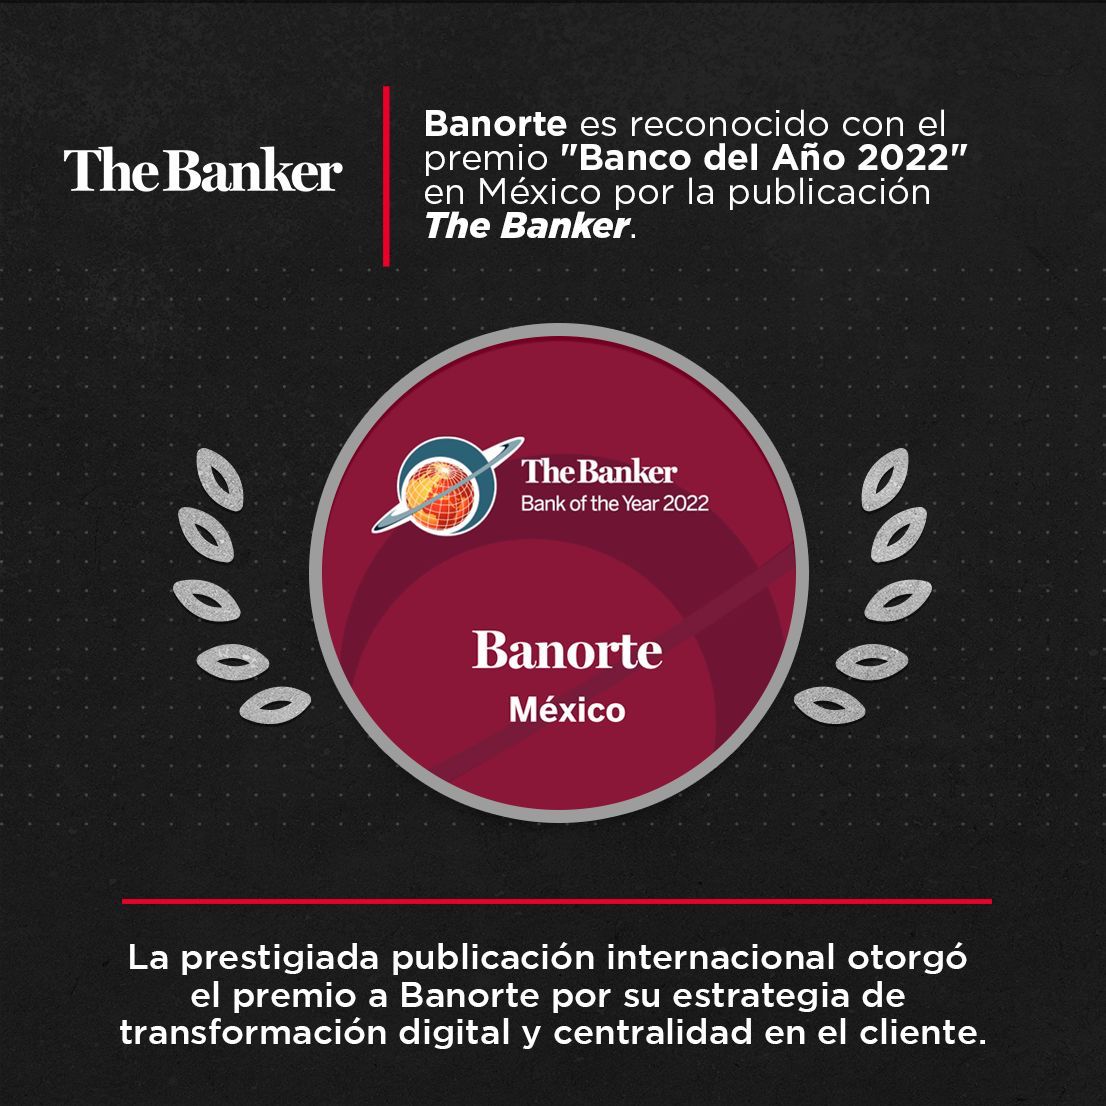 BANORTE, BANCO DEL AÑO 2022 EN MÉXICO: THE BANKER